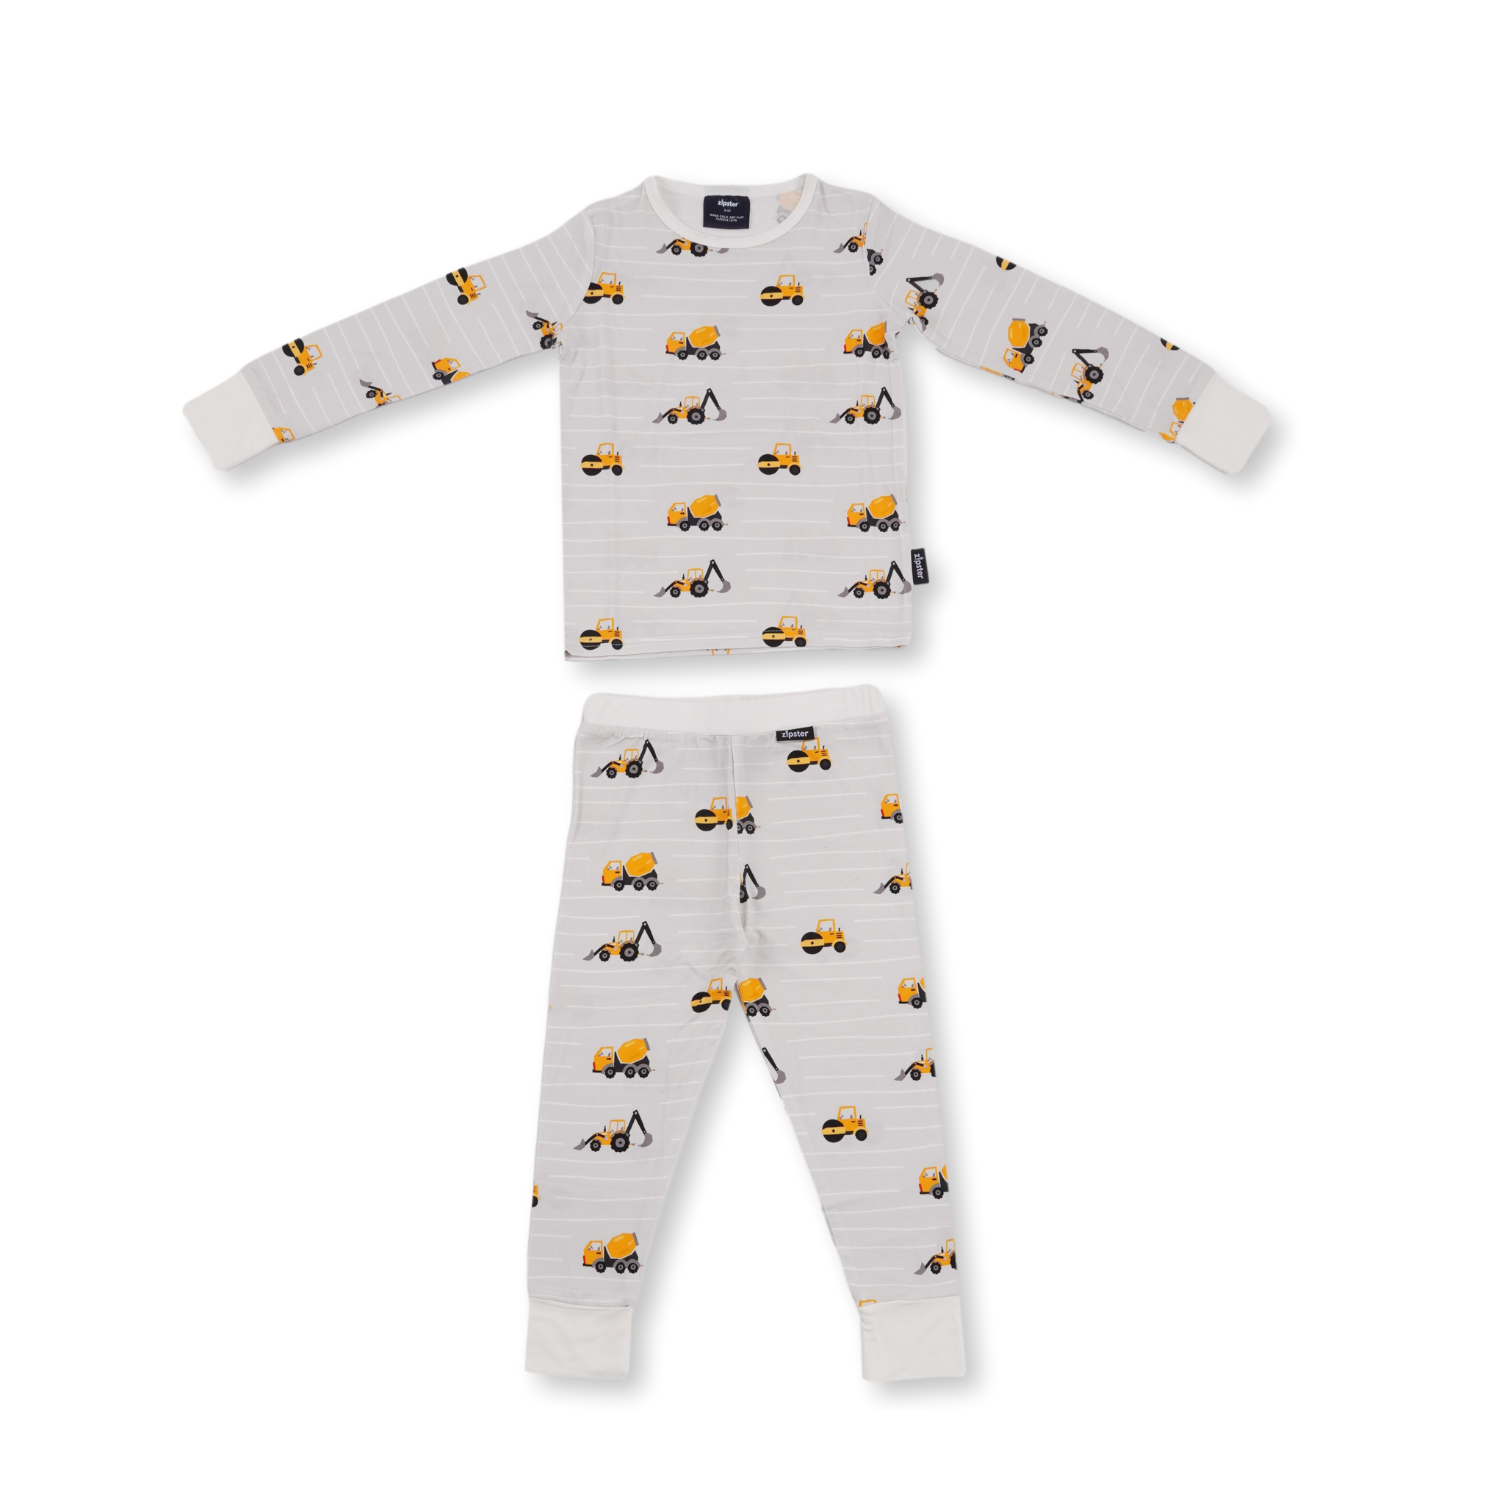 Konstruktion af pyjamas-sæt til børn